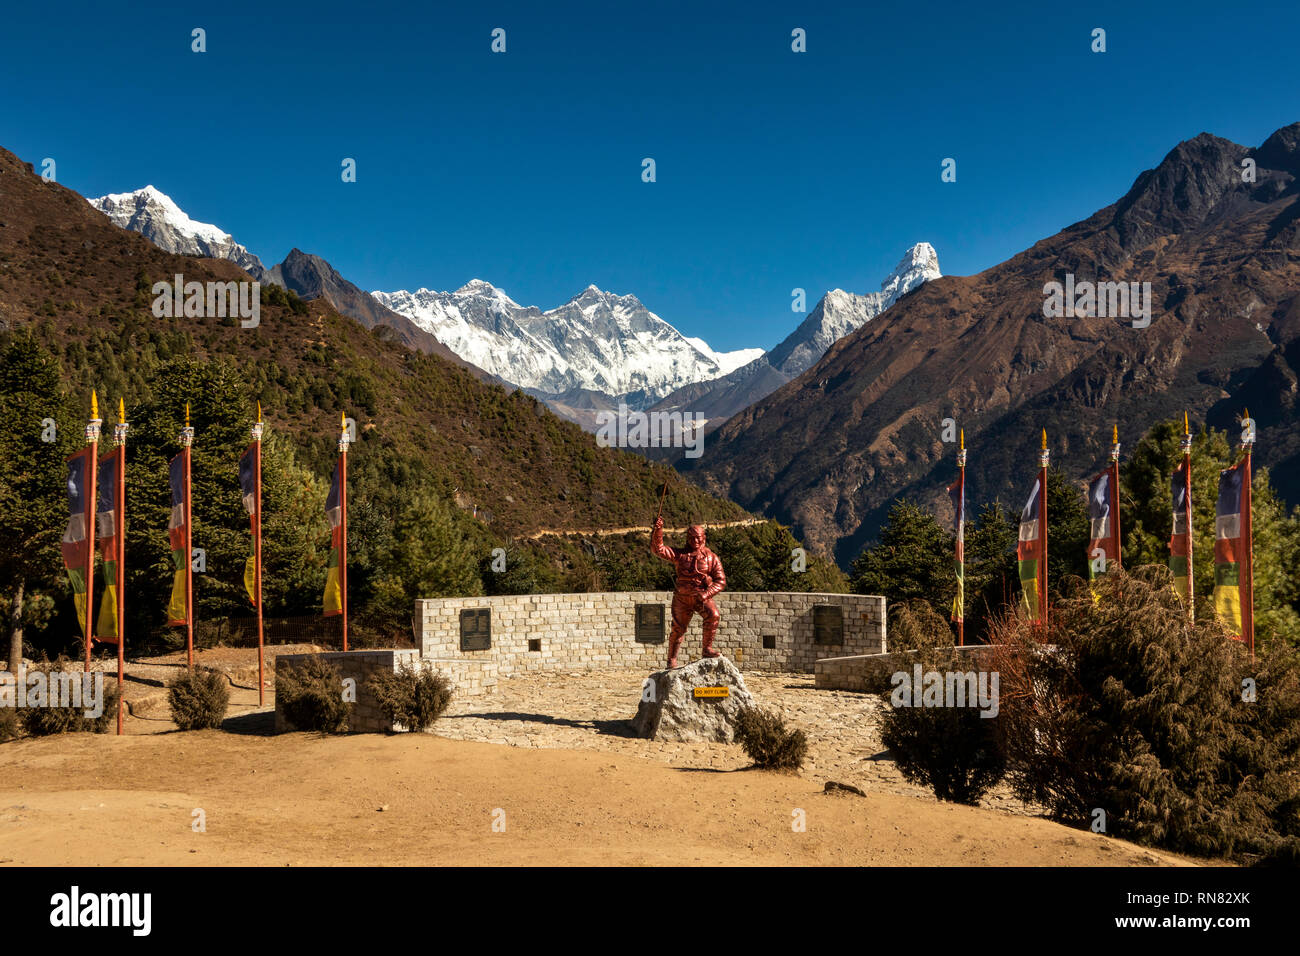 Le Népal, Namche Bazar, le parc national de Sagarmatha, Centre des visiteurs, le sherpa Tenzing Norgay memorial statue avec le Mont Everest derrière Banque D'Images